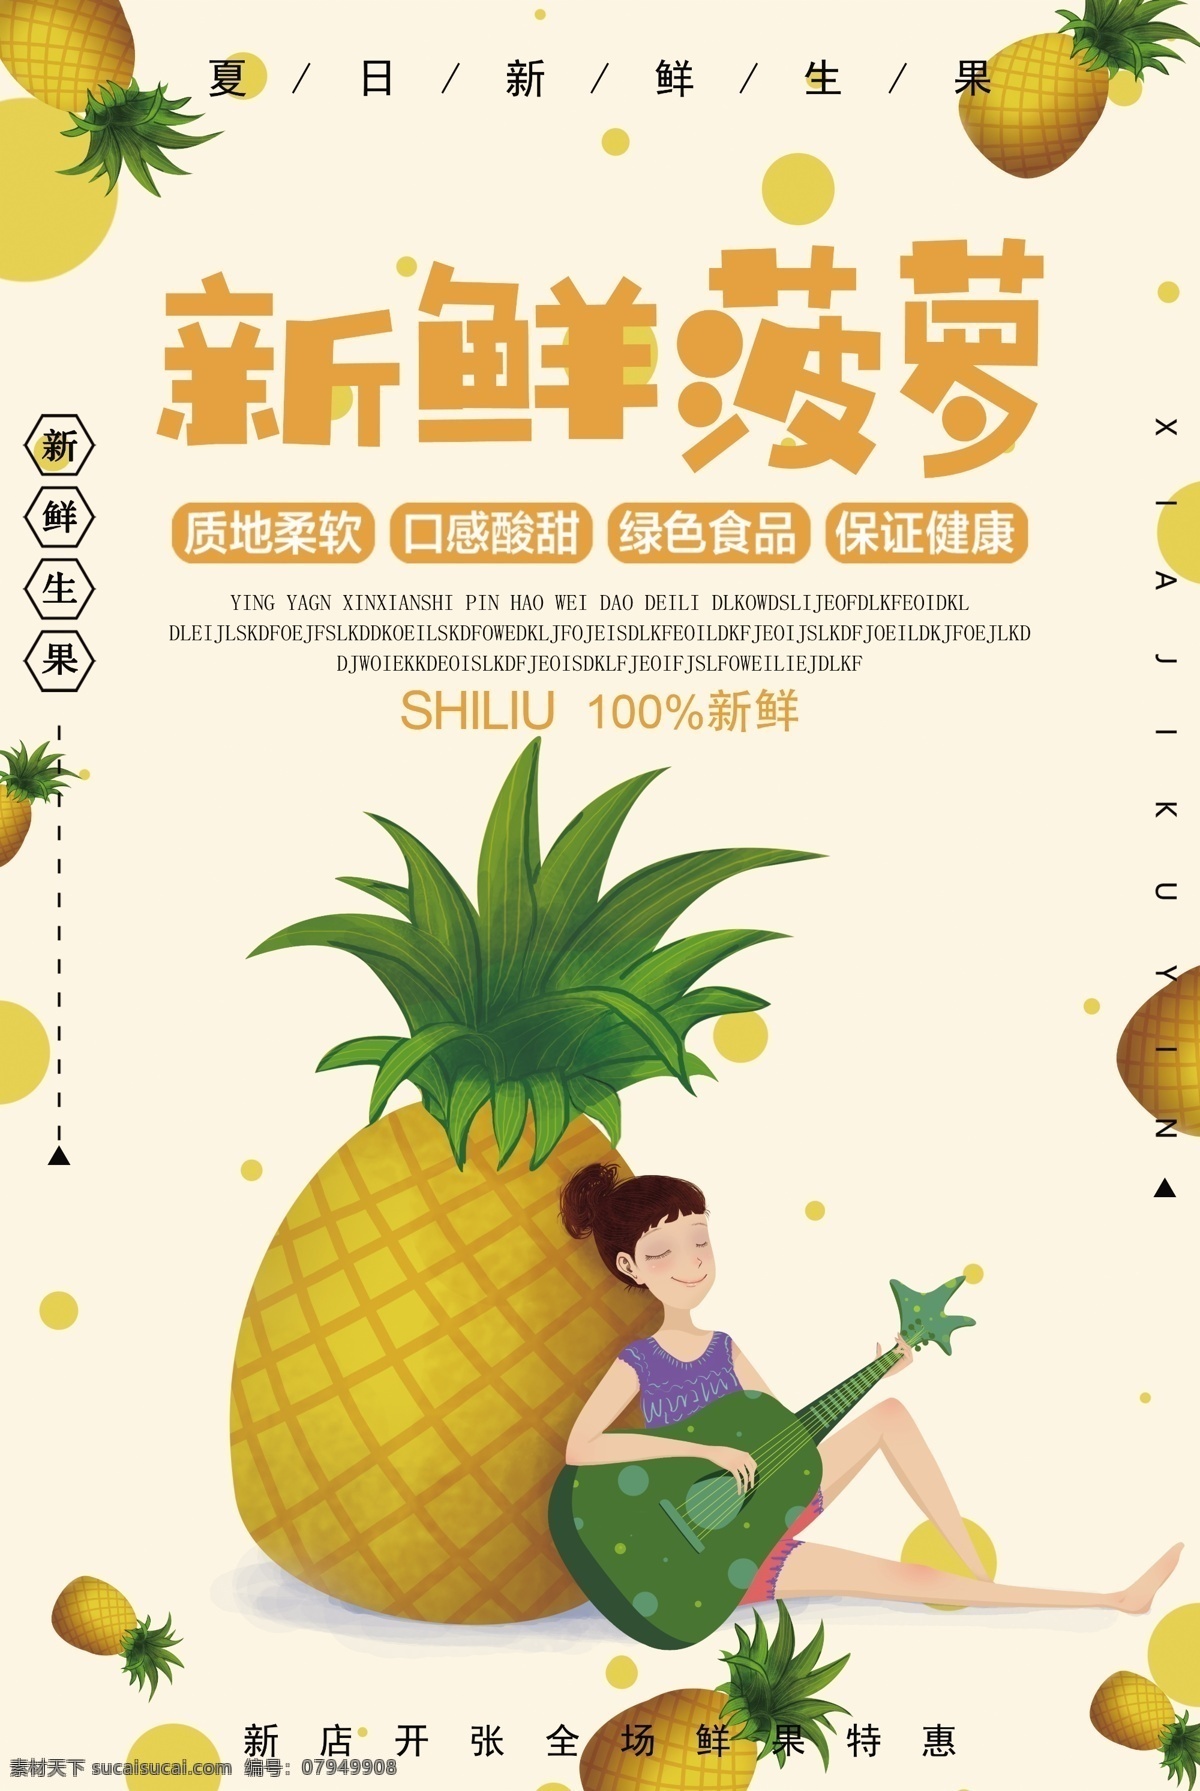 新鲜 菠萝 水果 活动 宣传海报 素材图片 新鲜菠萝 宣传 海报 餐饮美食 类